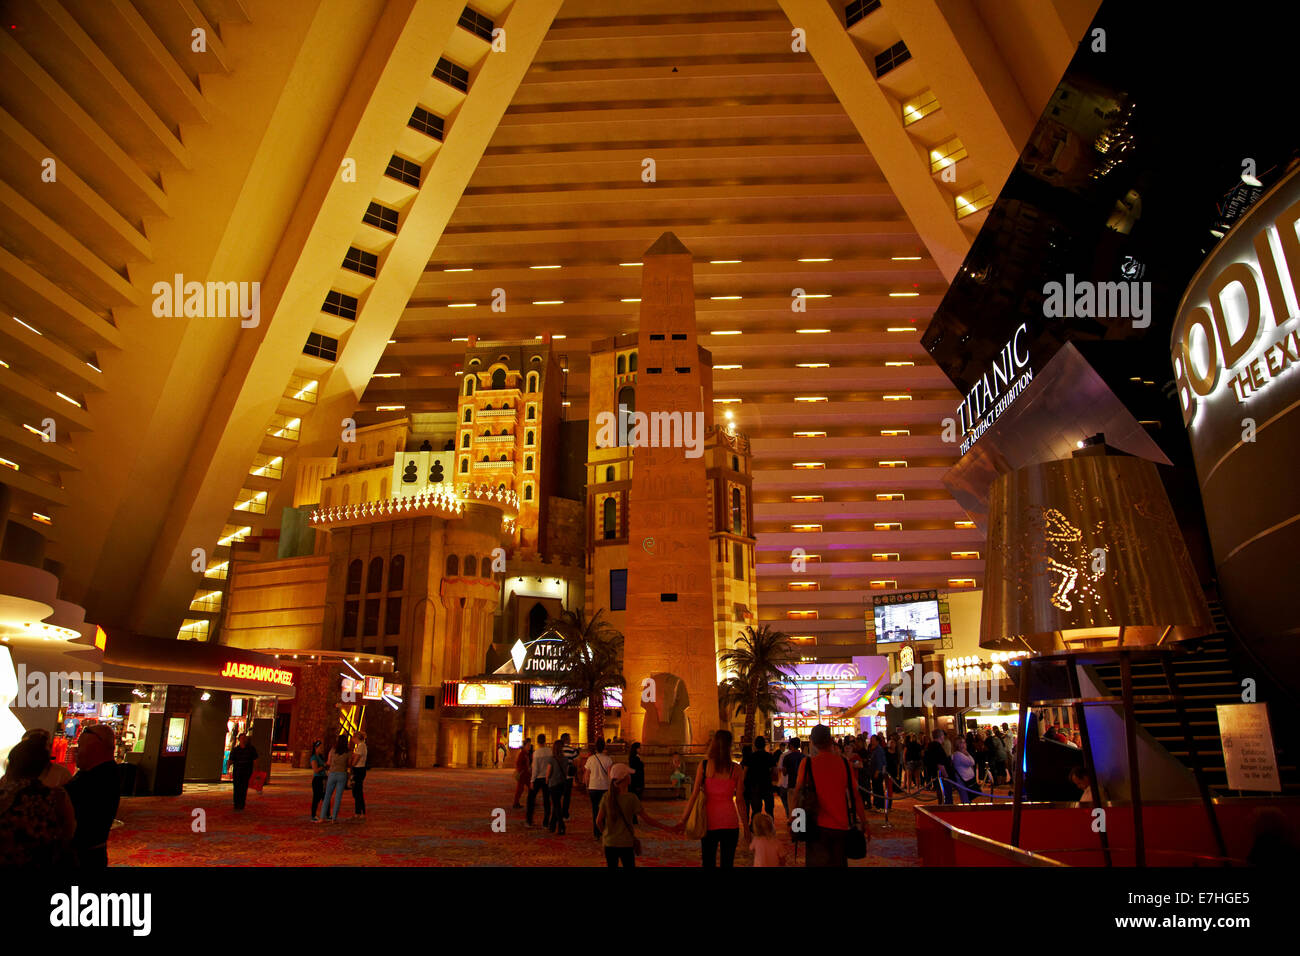 El vestíbulo y las habitaciones del hotel alta en el interior de la pirámide de Luxor Hotel and Casino, Las Vegas, Nevada, EE.UU. Foto de stock